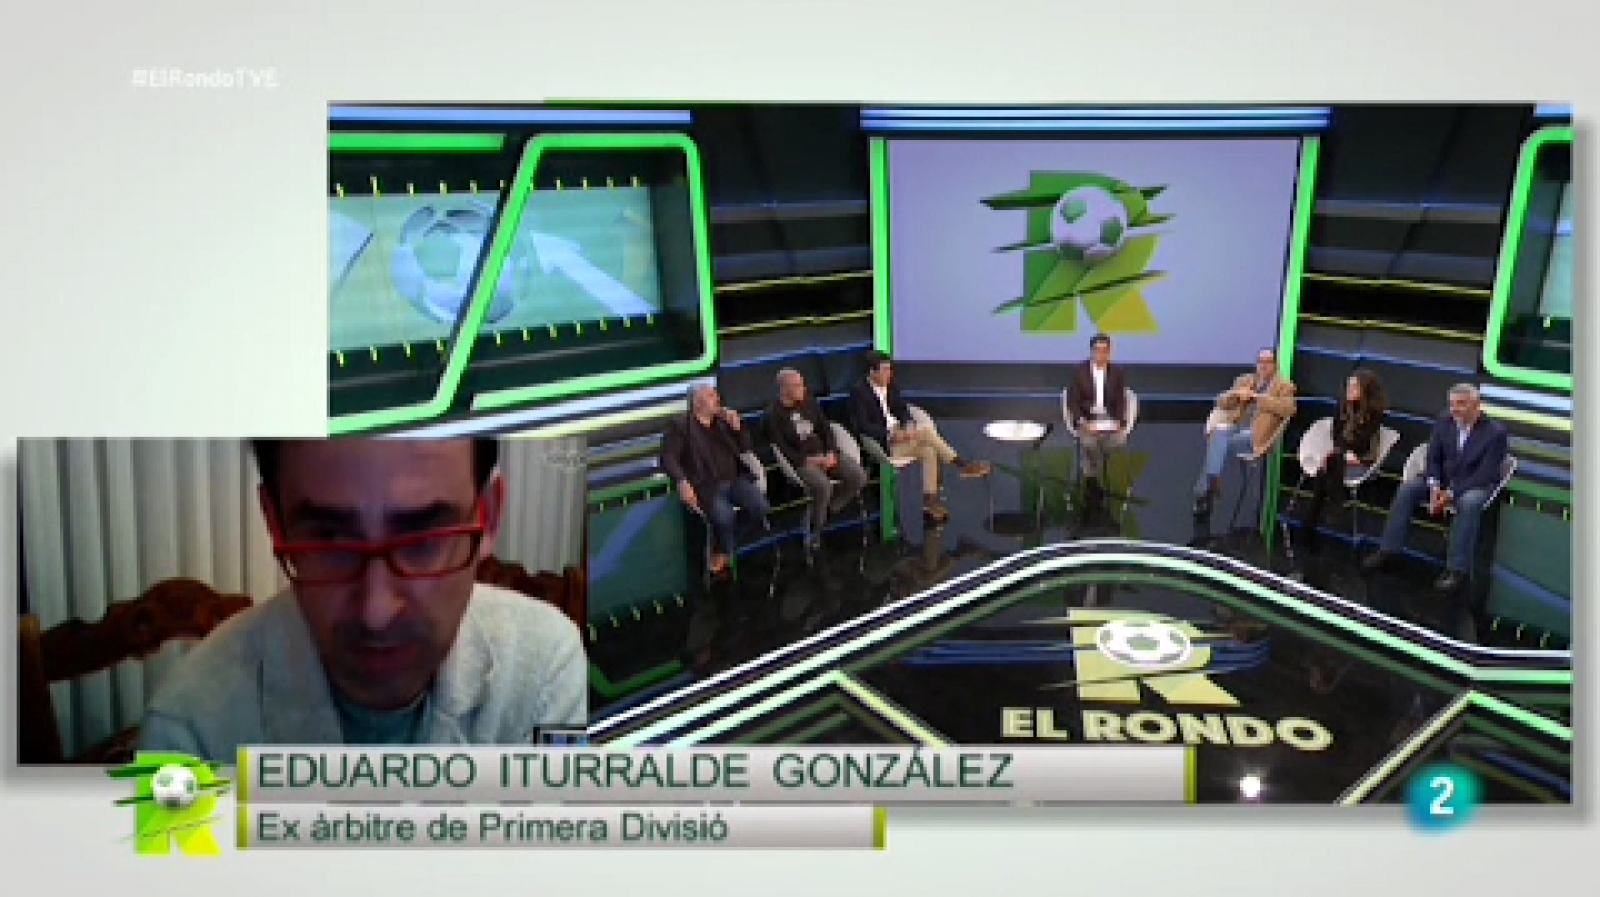 El Rondo - Les polèmiques arbitrals amb Iturralde González